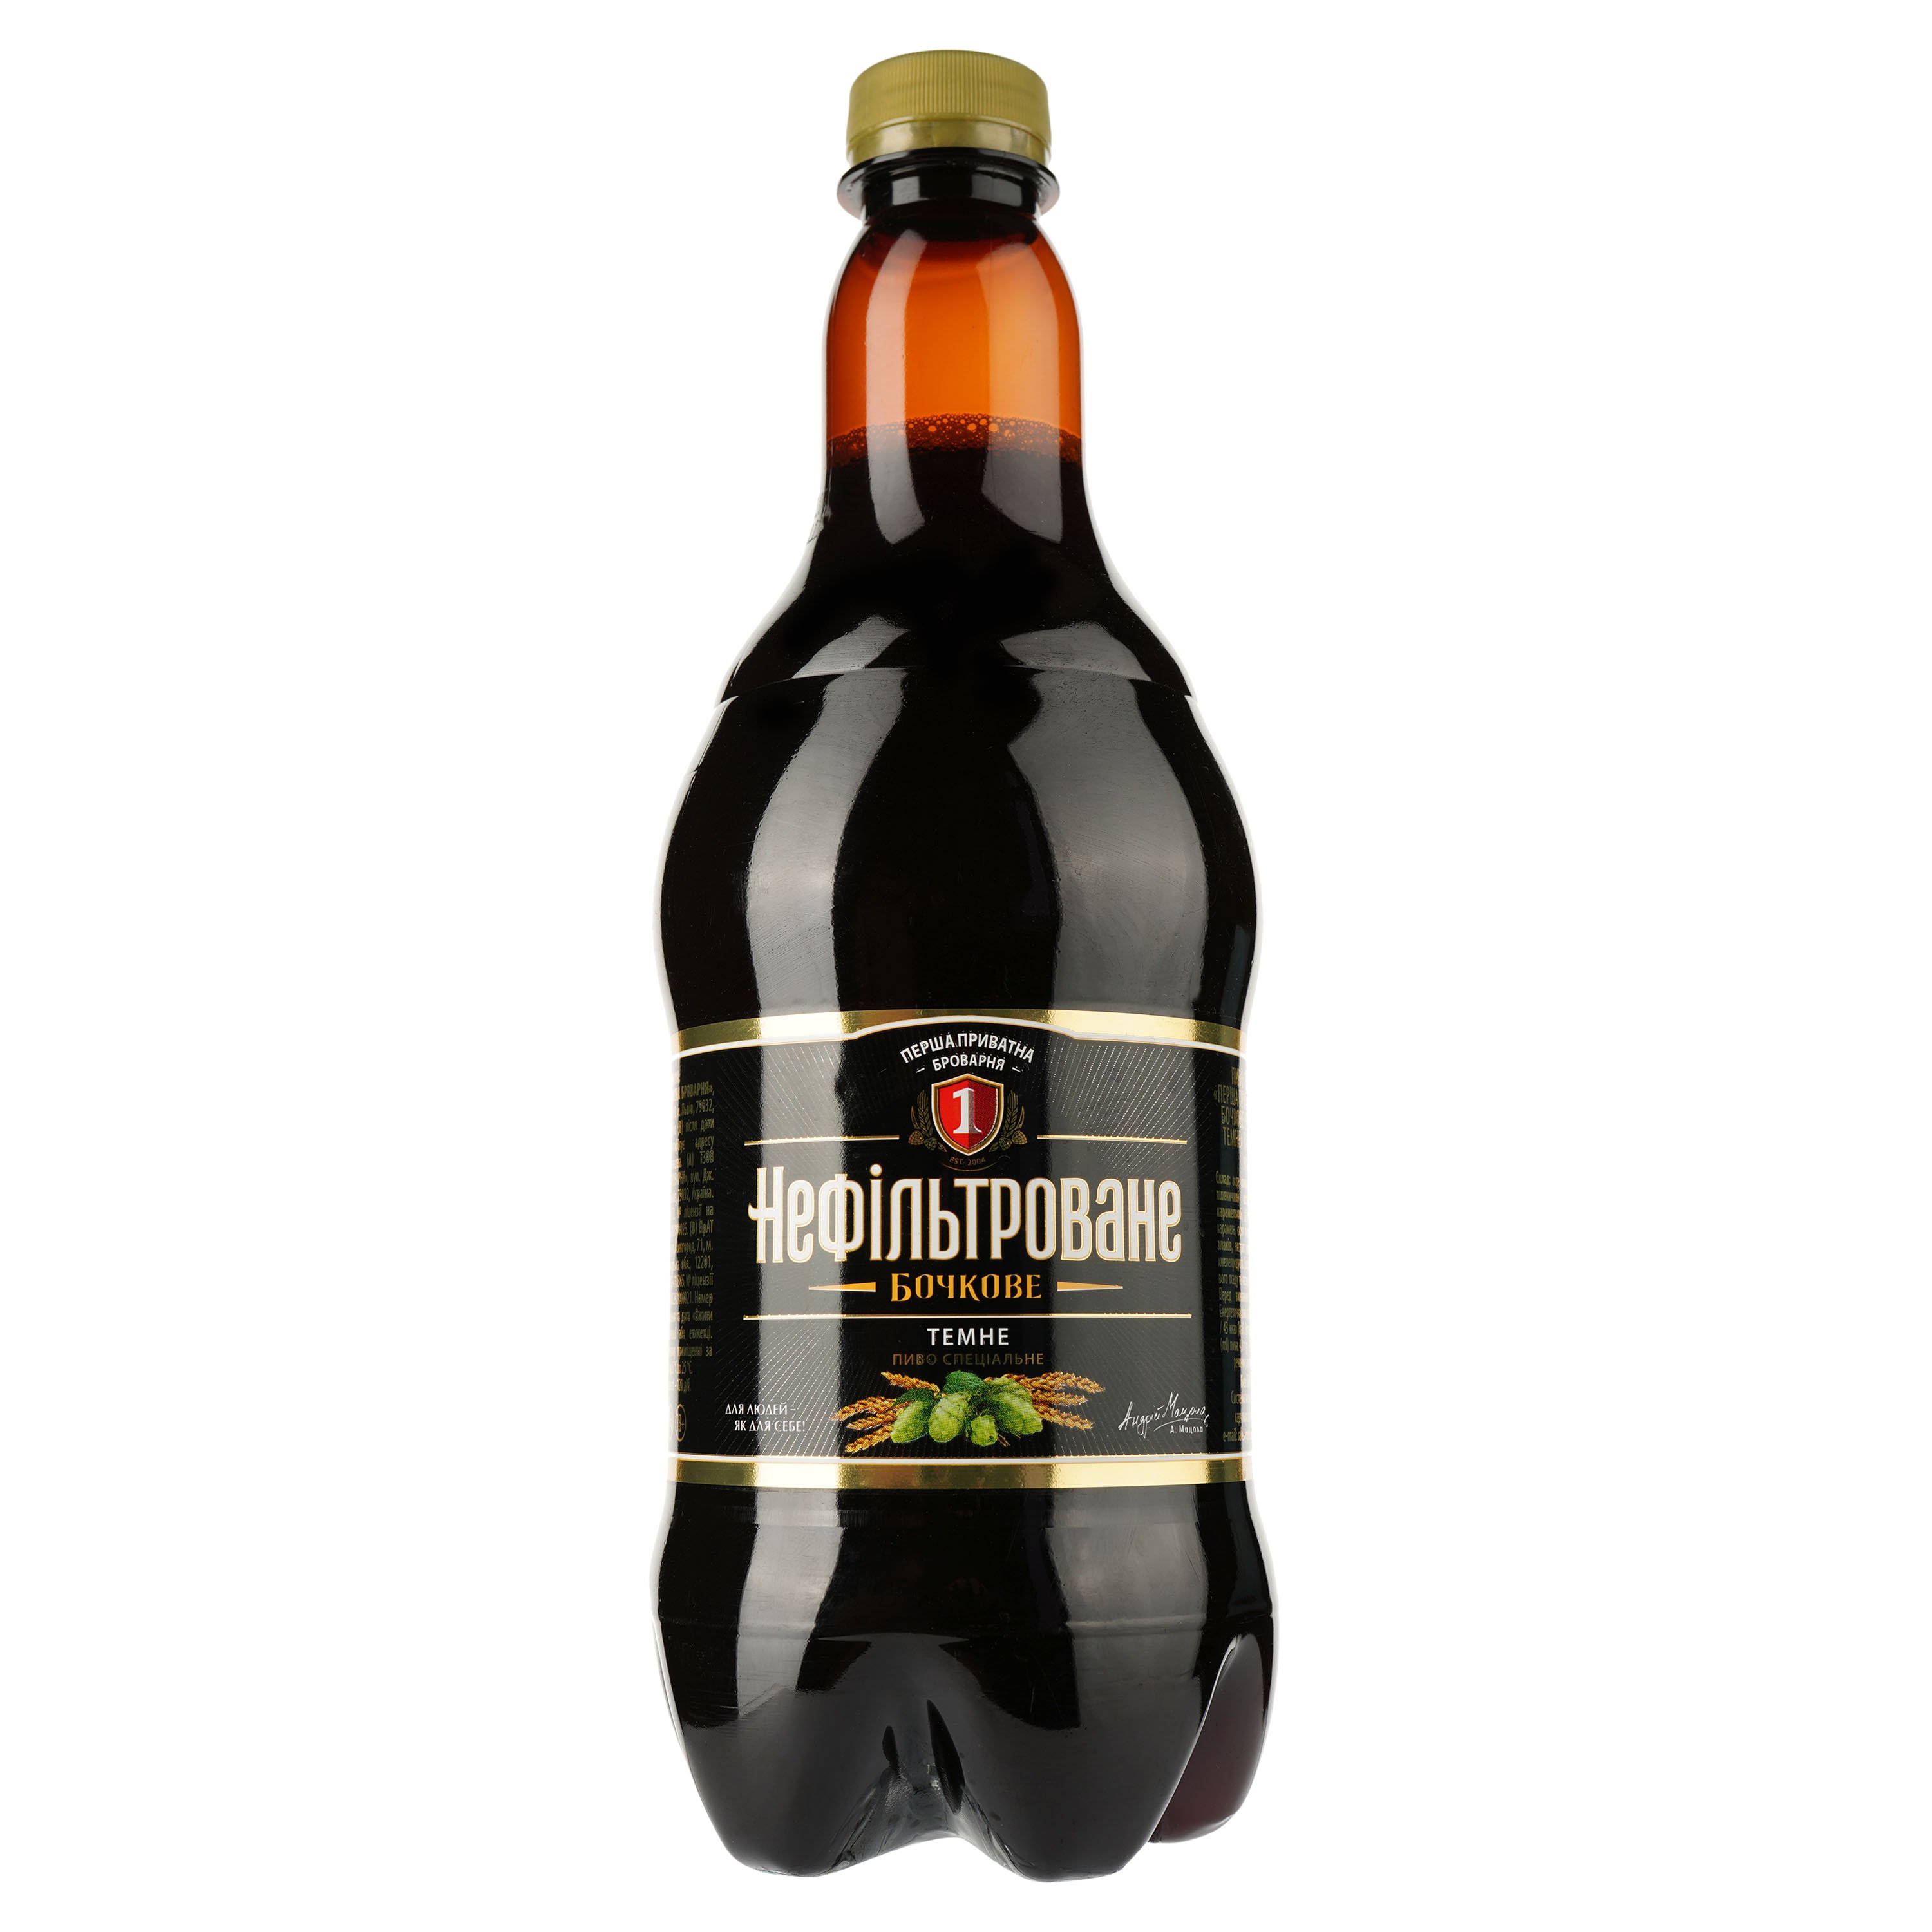 Пиво Перша приватна броварня Бочкове, темне, нефільроване, 4,8%, 0,9 л (770492) - фото 1